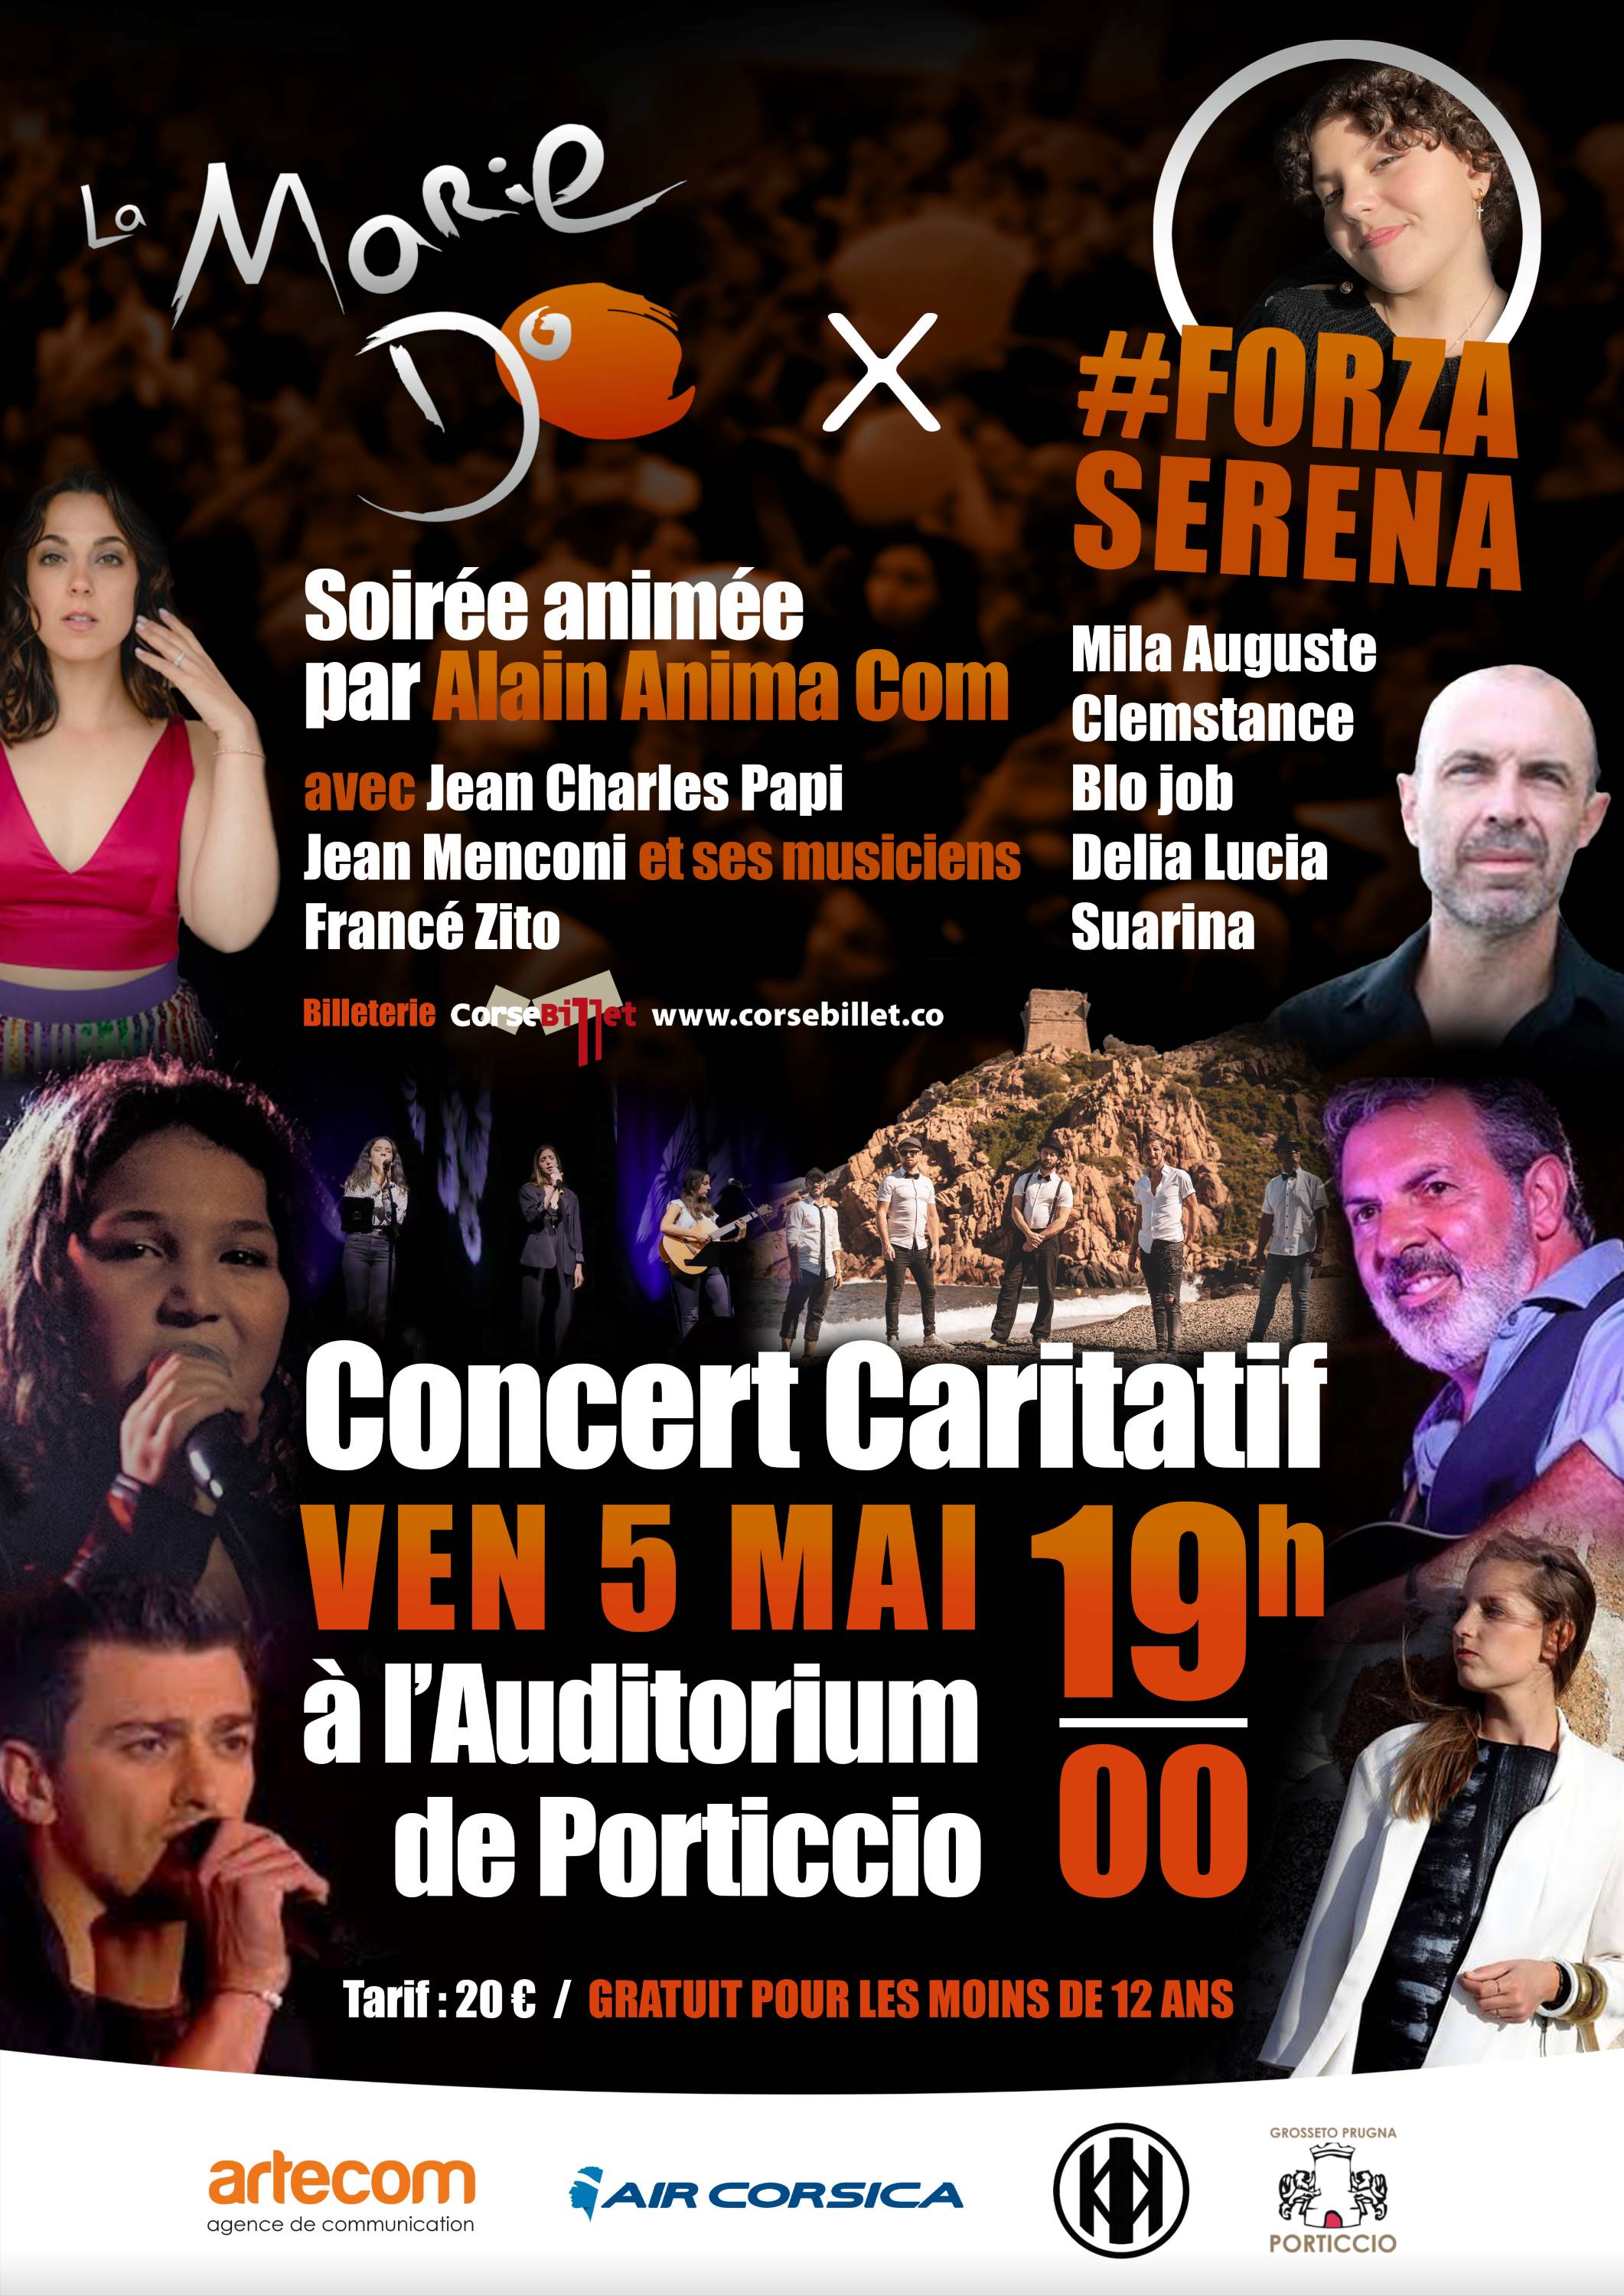 Concert Caritatif - La Marie Do et Forza Serena